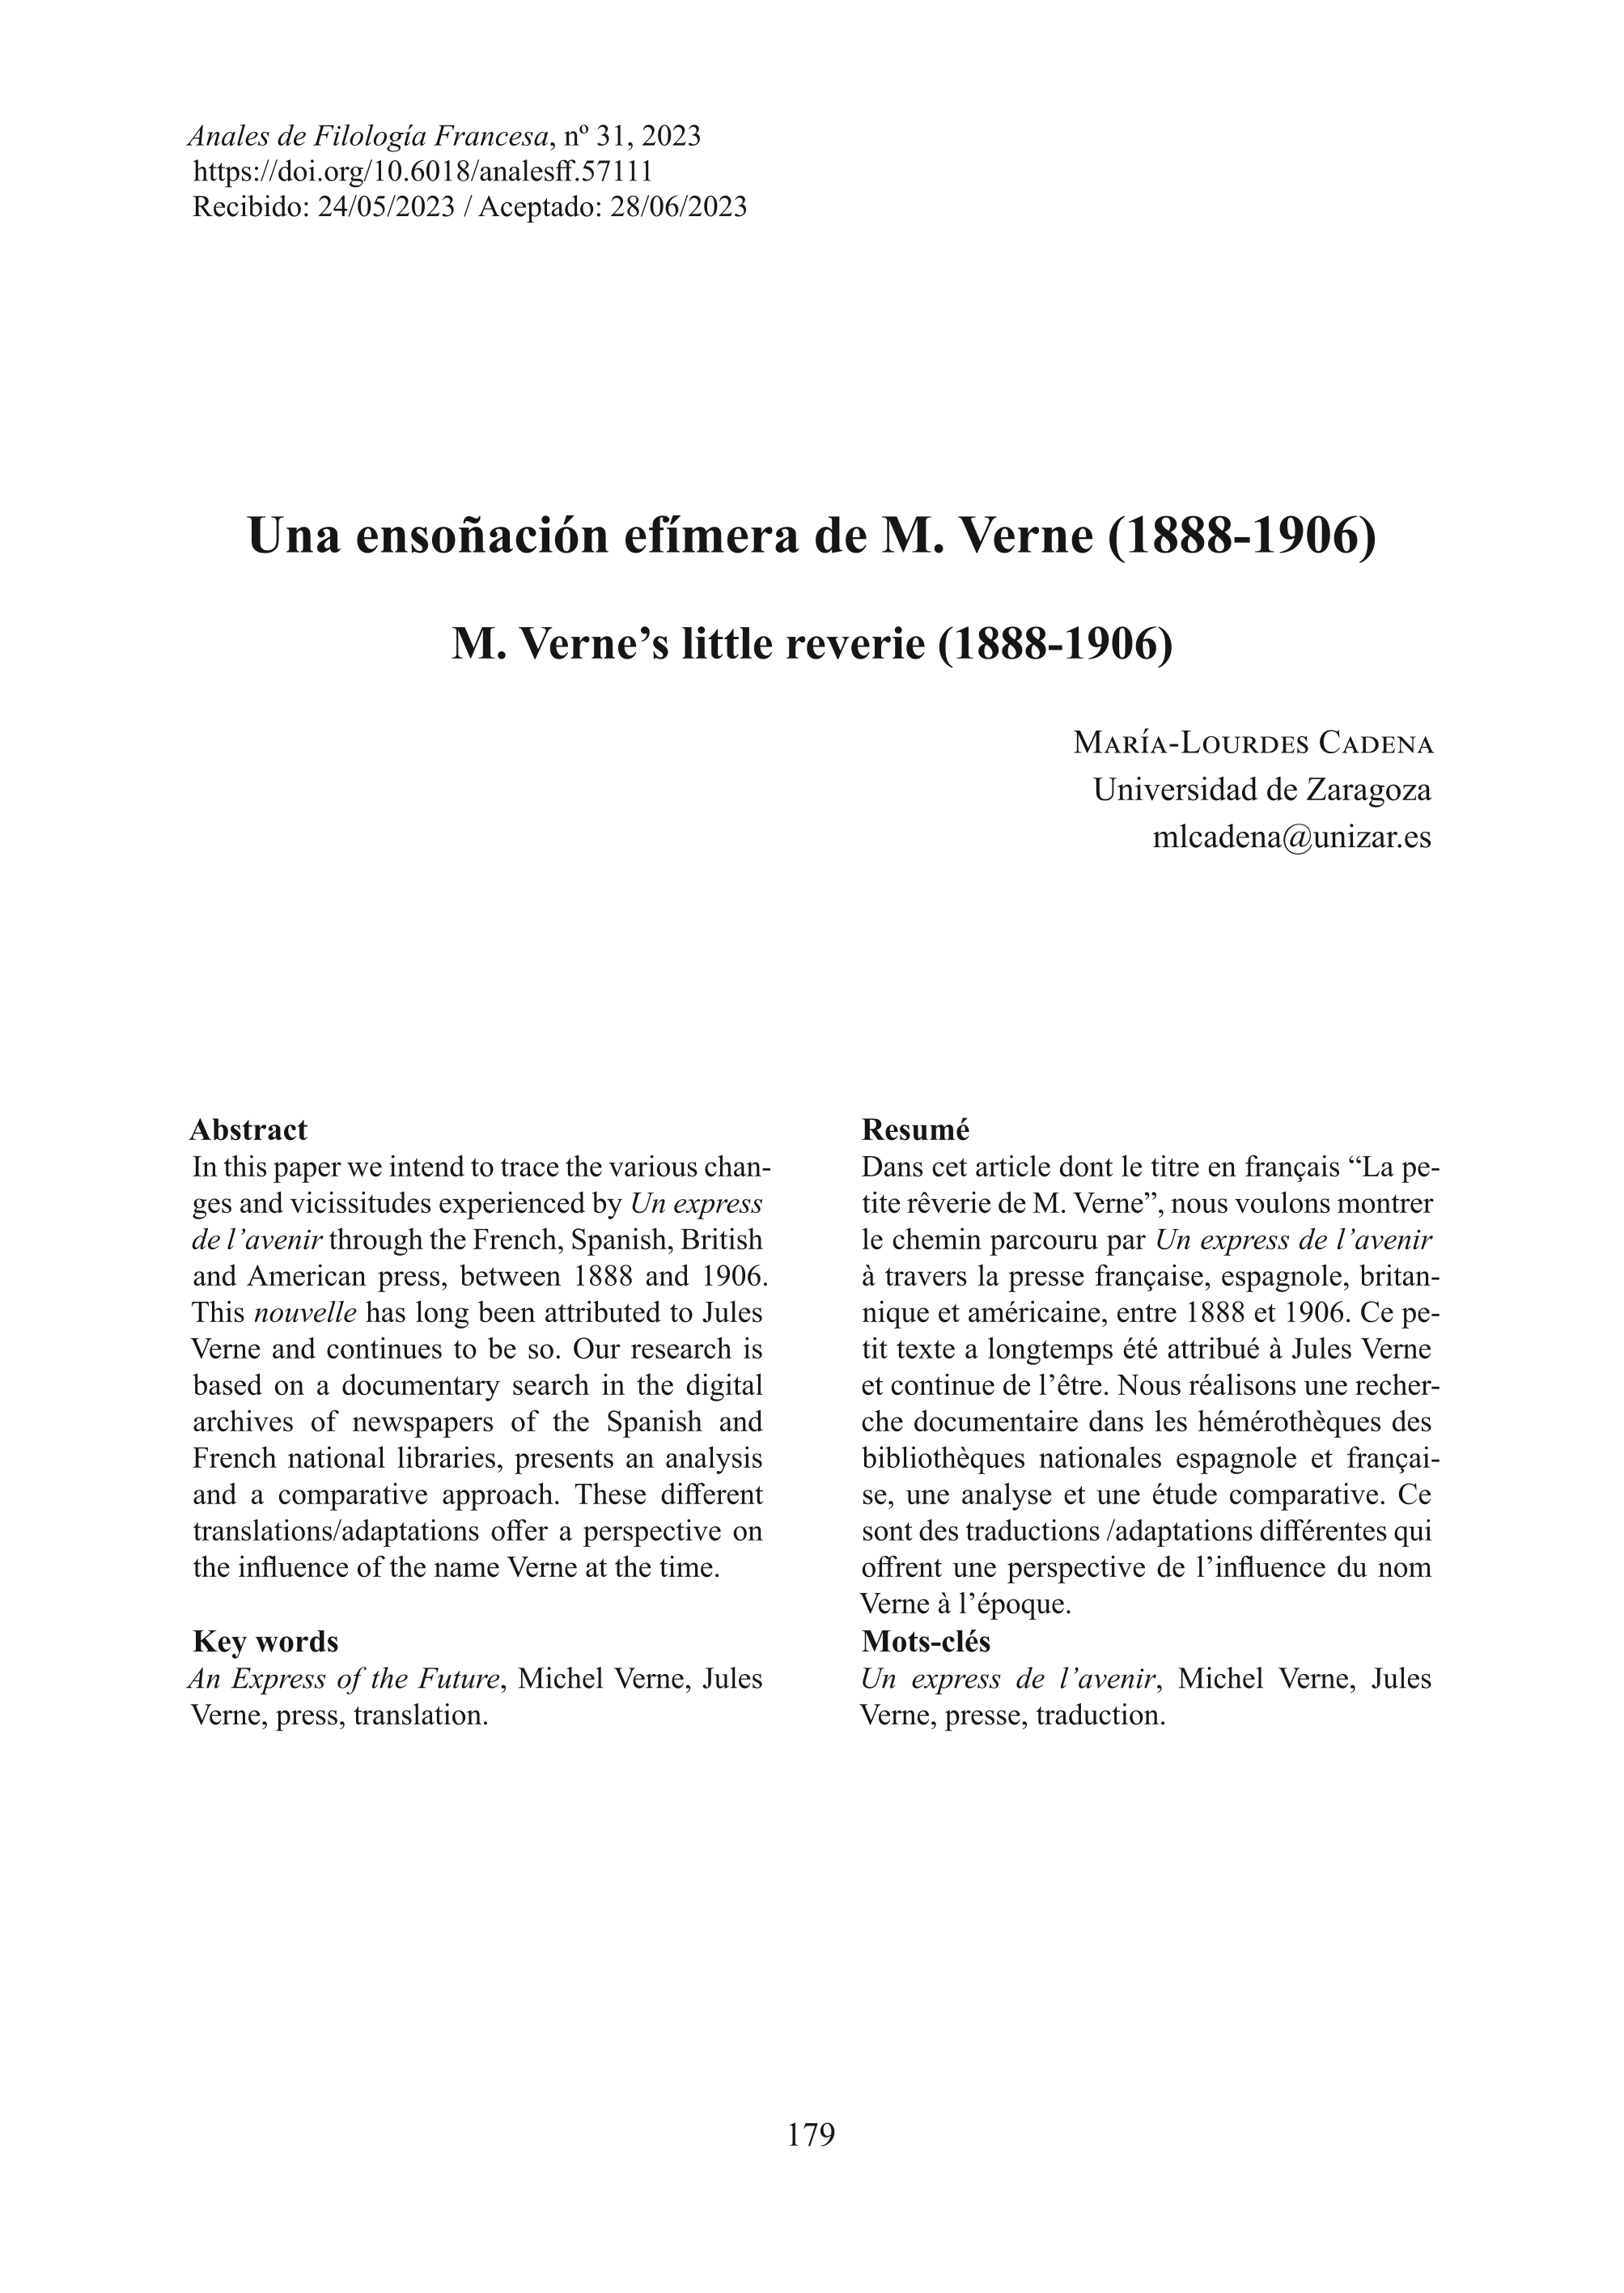 Una ensoñación efímera de M. Verne (1888-1906)